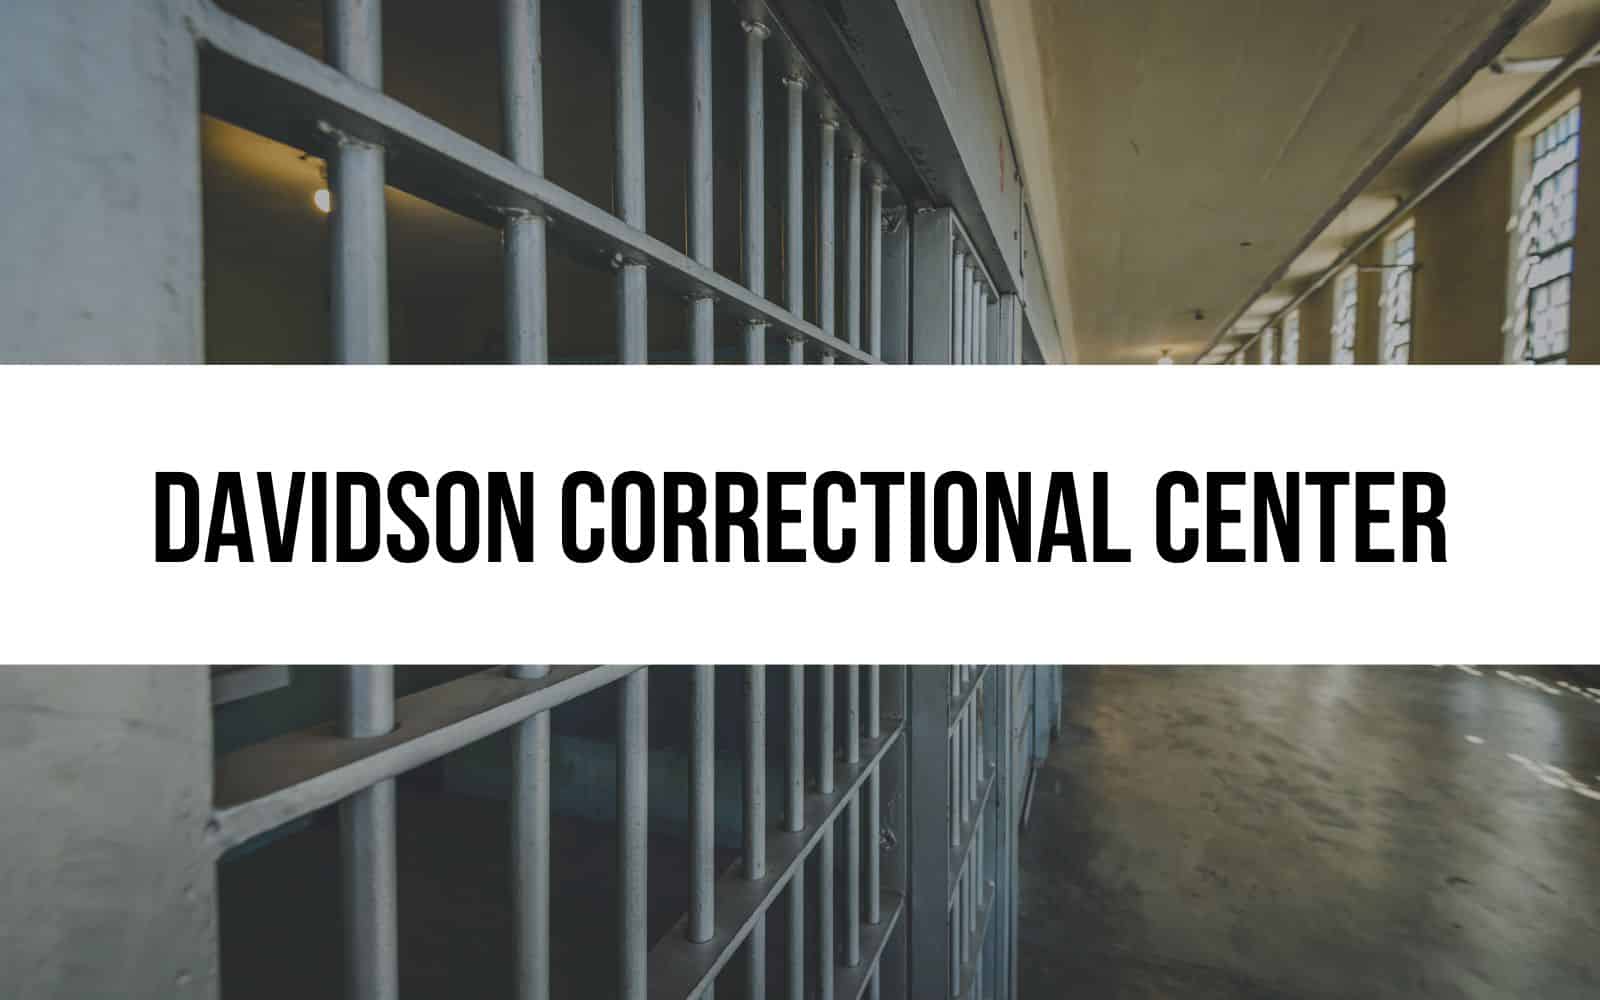 Davidson Correctional Center